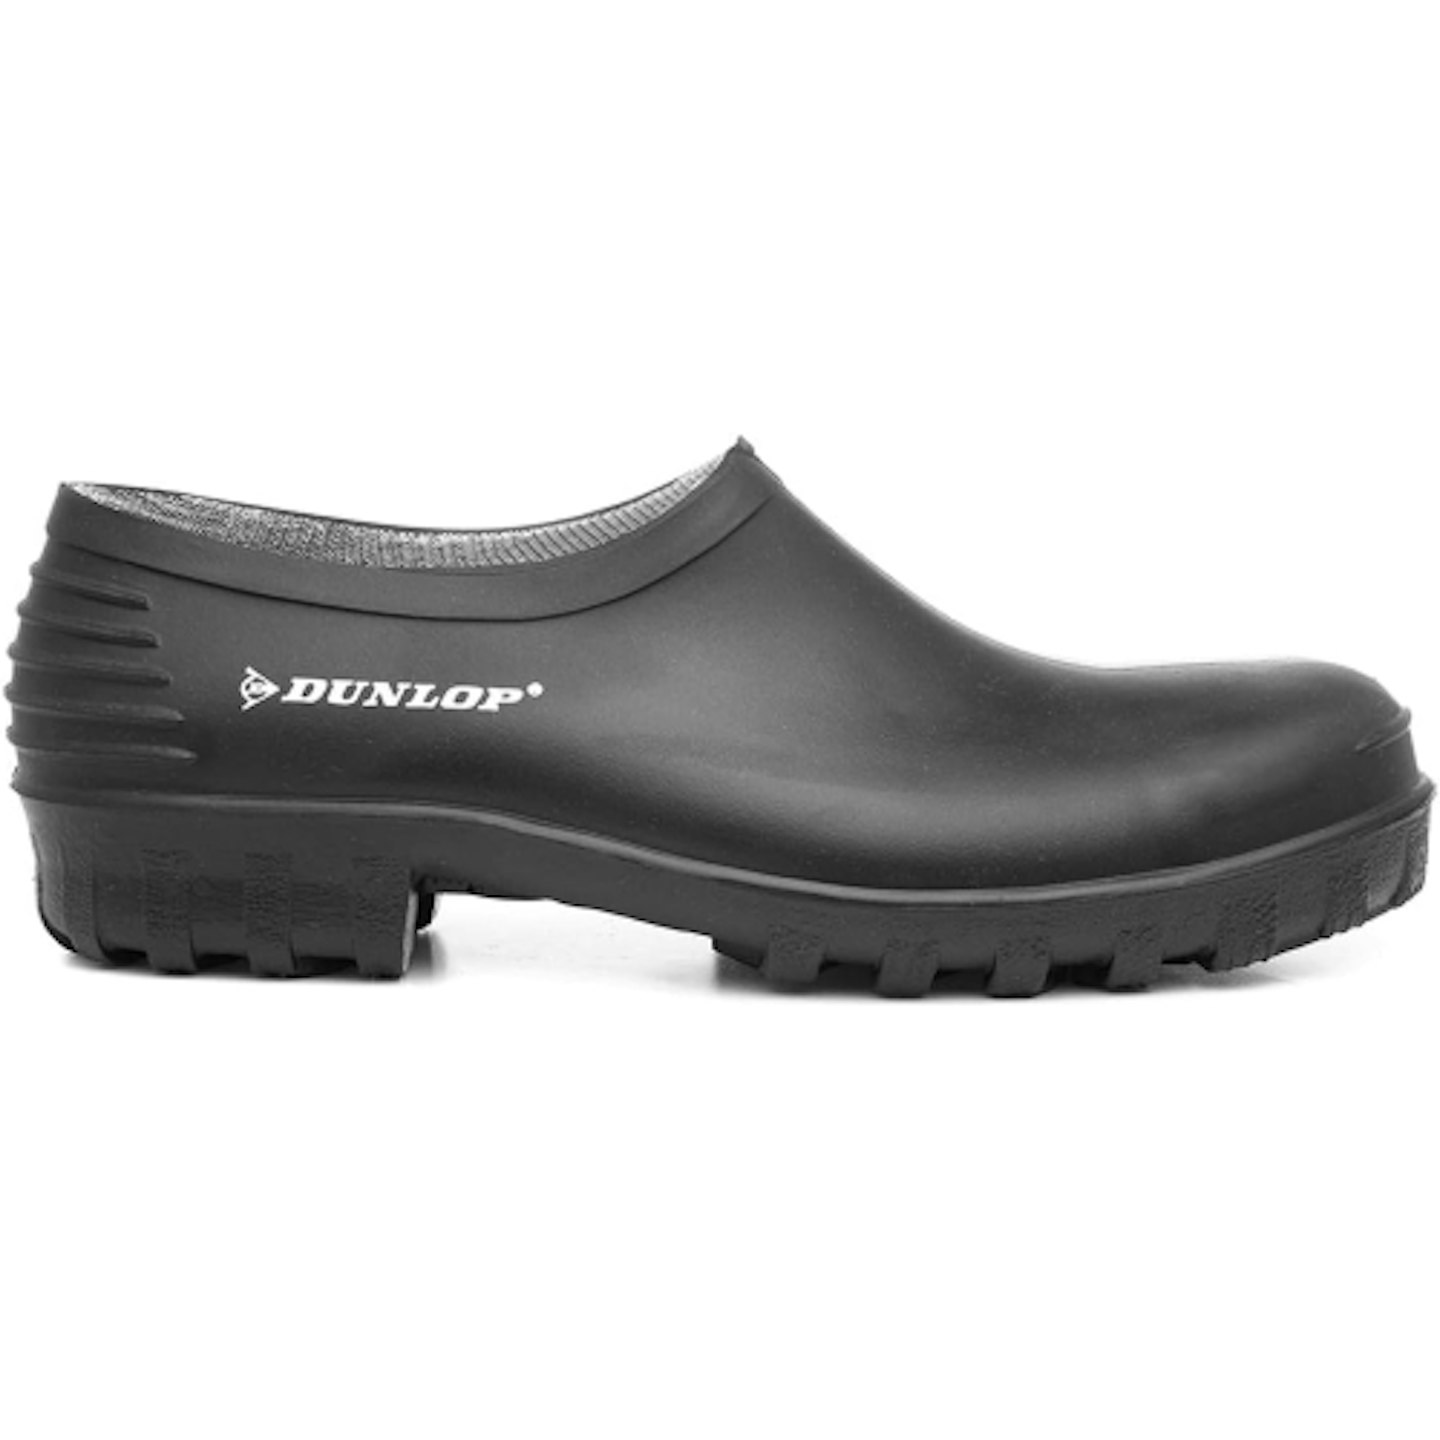 Dunlop garden shoes 